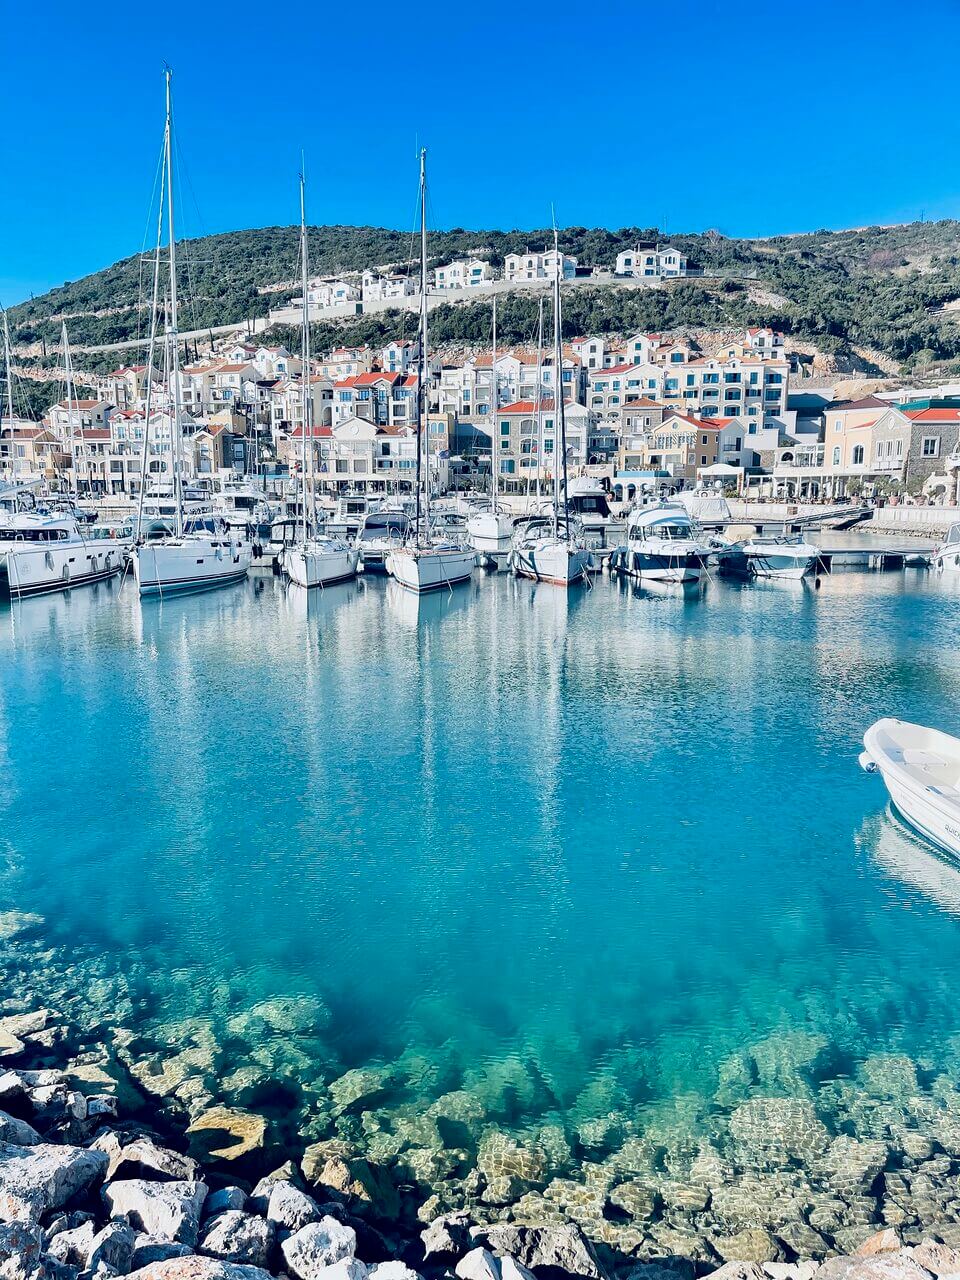 Eine lebendige Küstenszene mit einem Hafen, in dem mehrere weiße Yachten im klaren türkisfarbenen Wasser vor Anker liegen. Im Hintergrund säumen farbenfrohe Gebäude in unterschiedlichen Architekturstilen den Hang unter einem strahlend blauen Himmel.